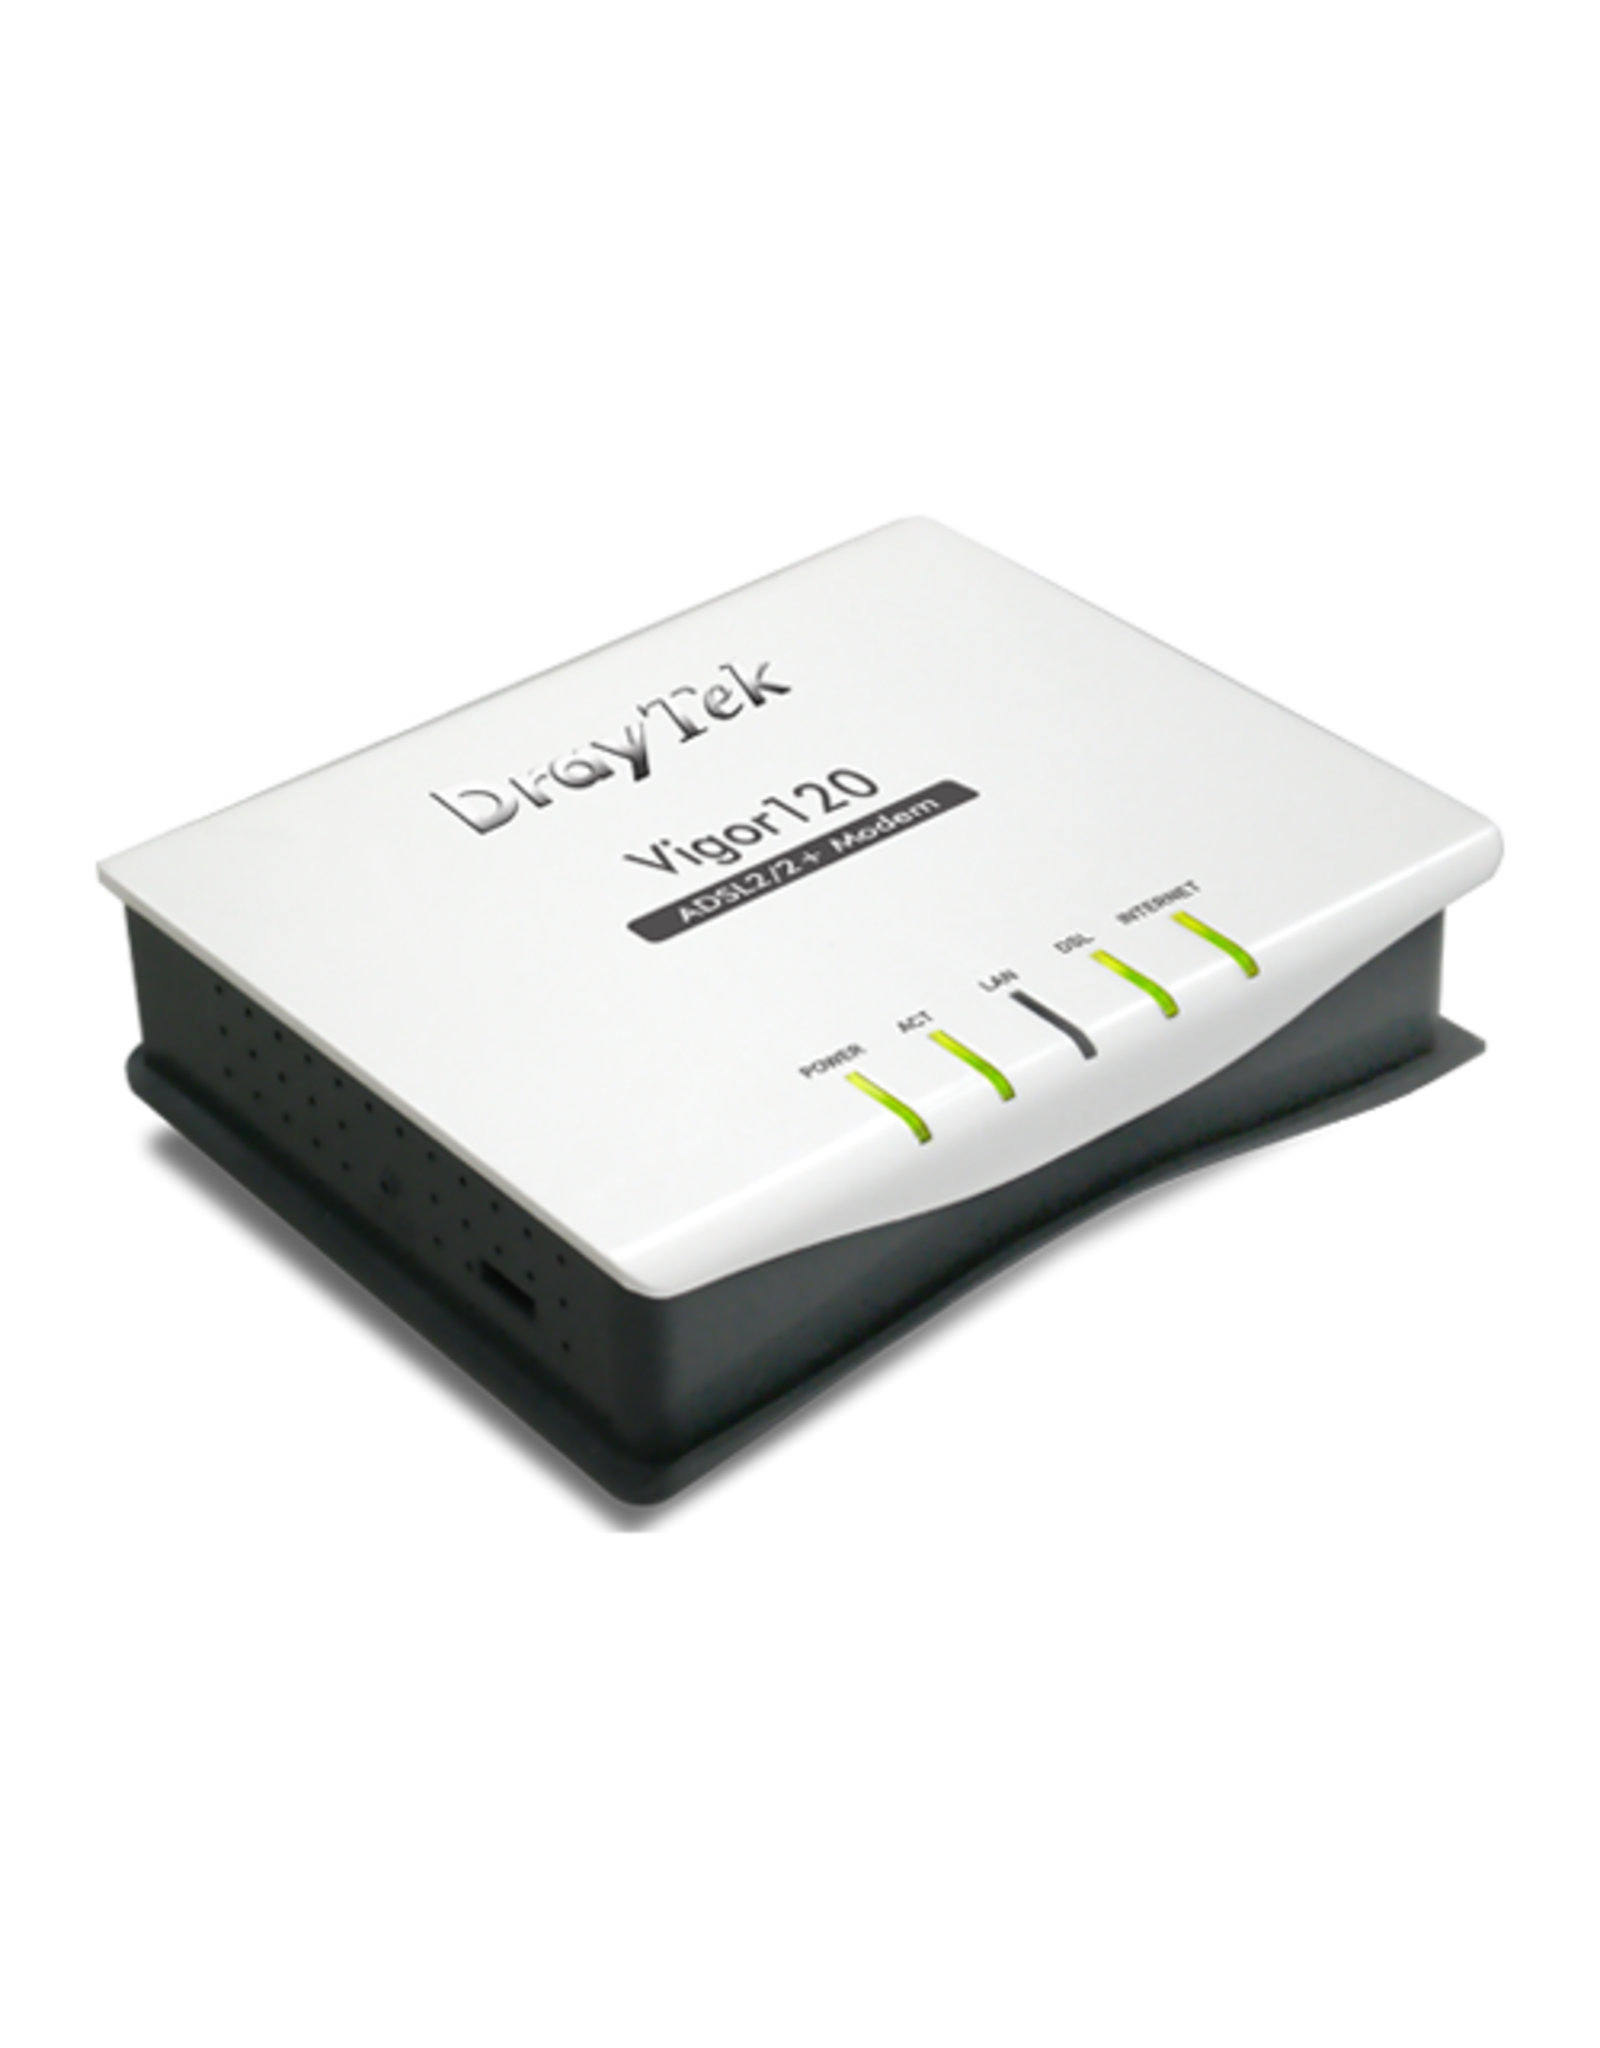 Draytek Draytek Vigor120 - ADSL 2+ Router with 1 x LAN port, Firewall and TR-069